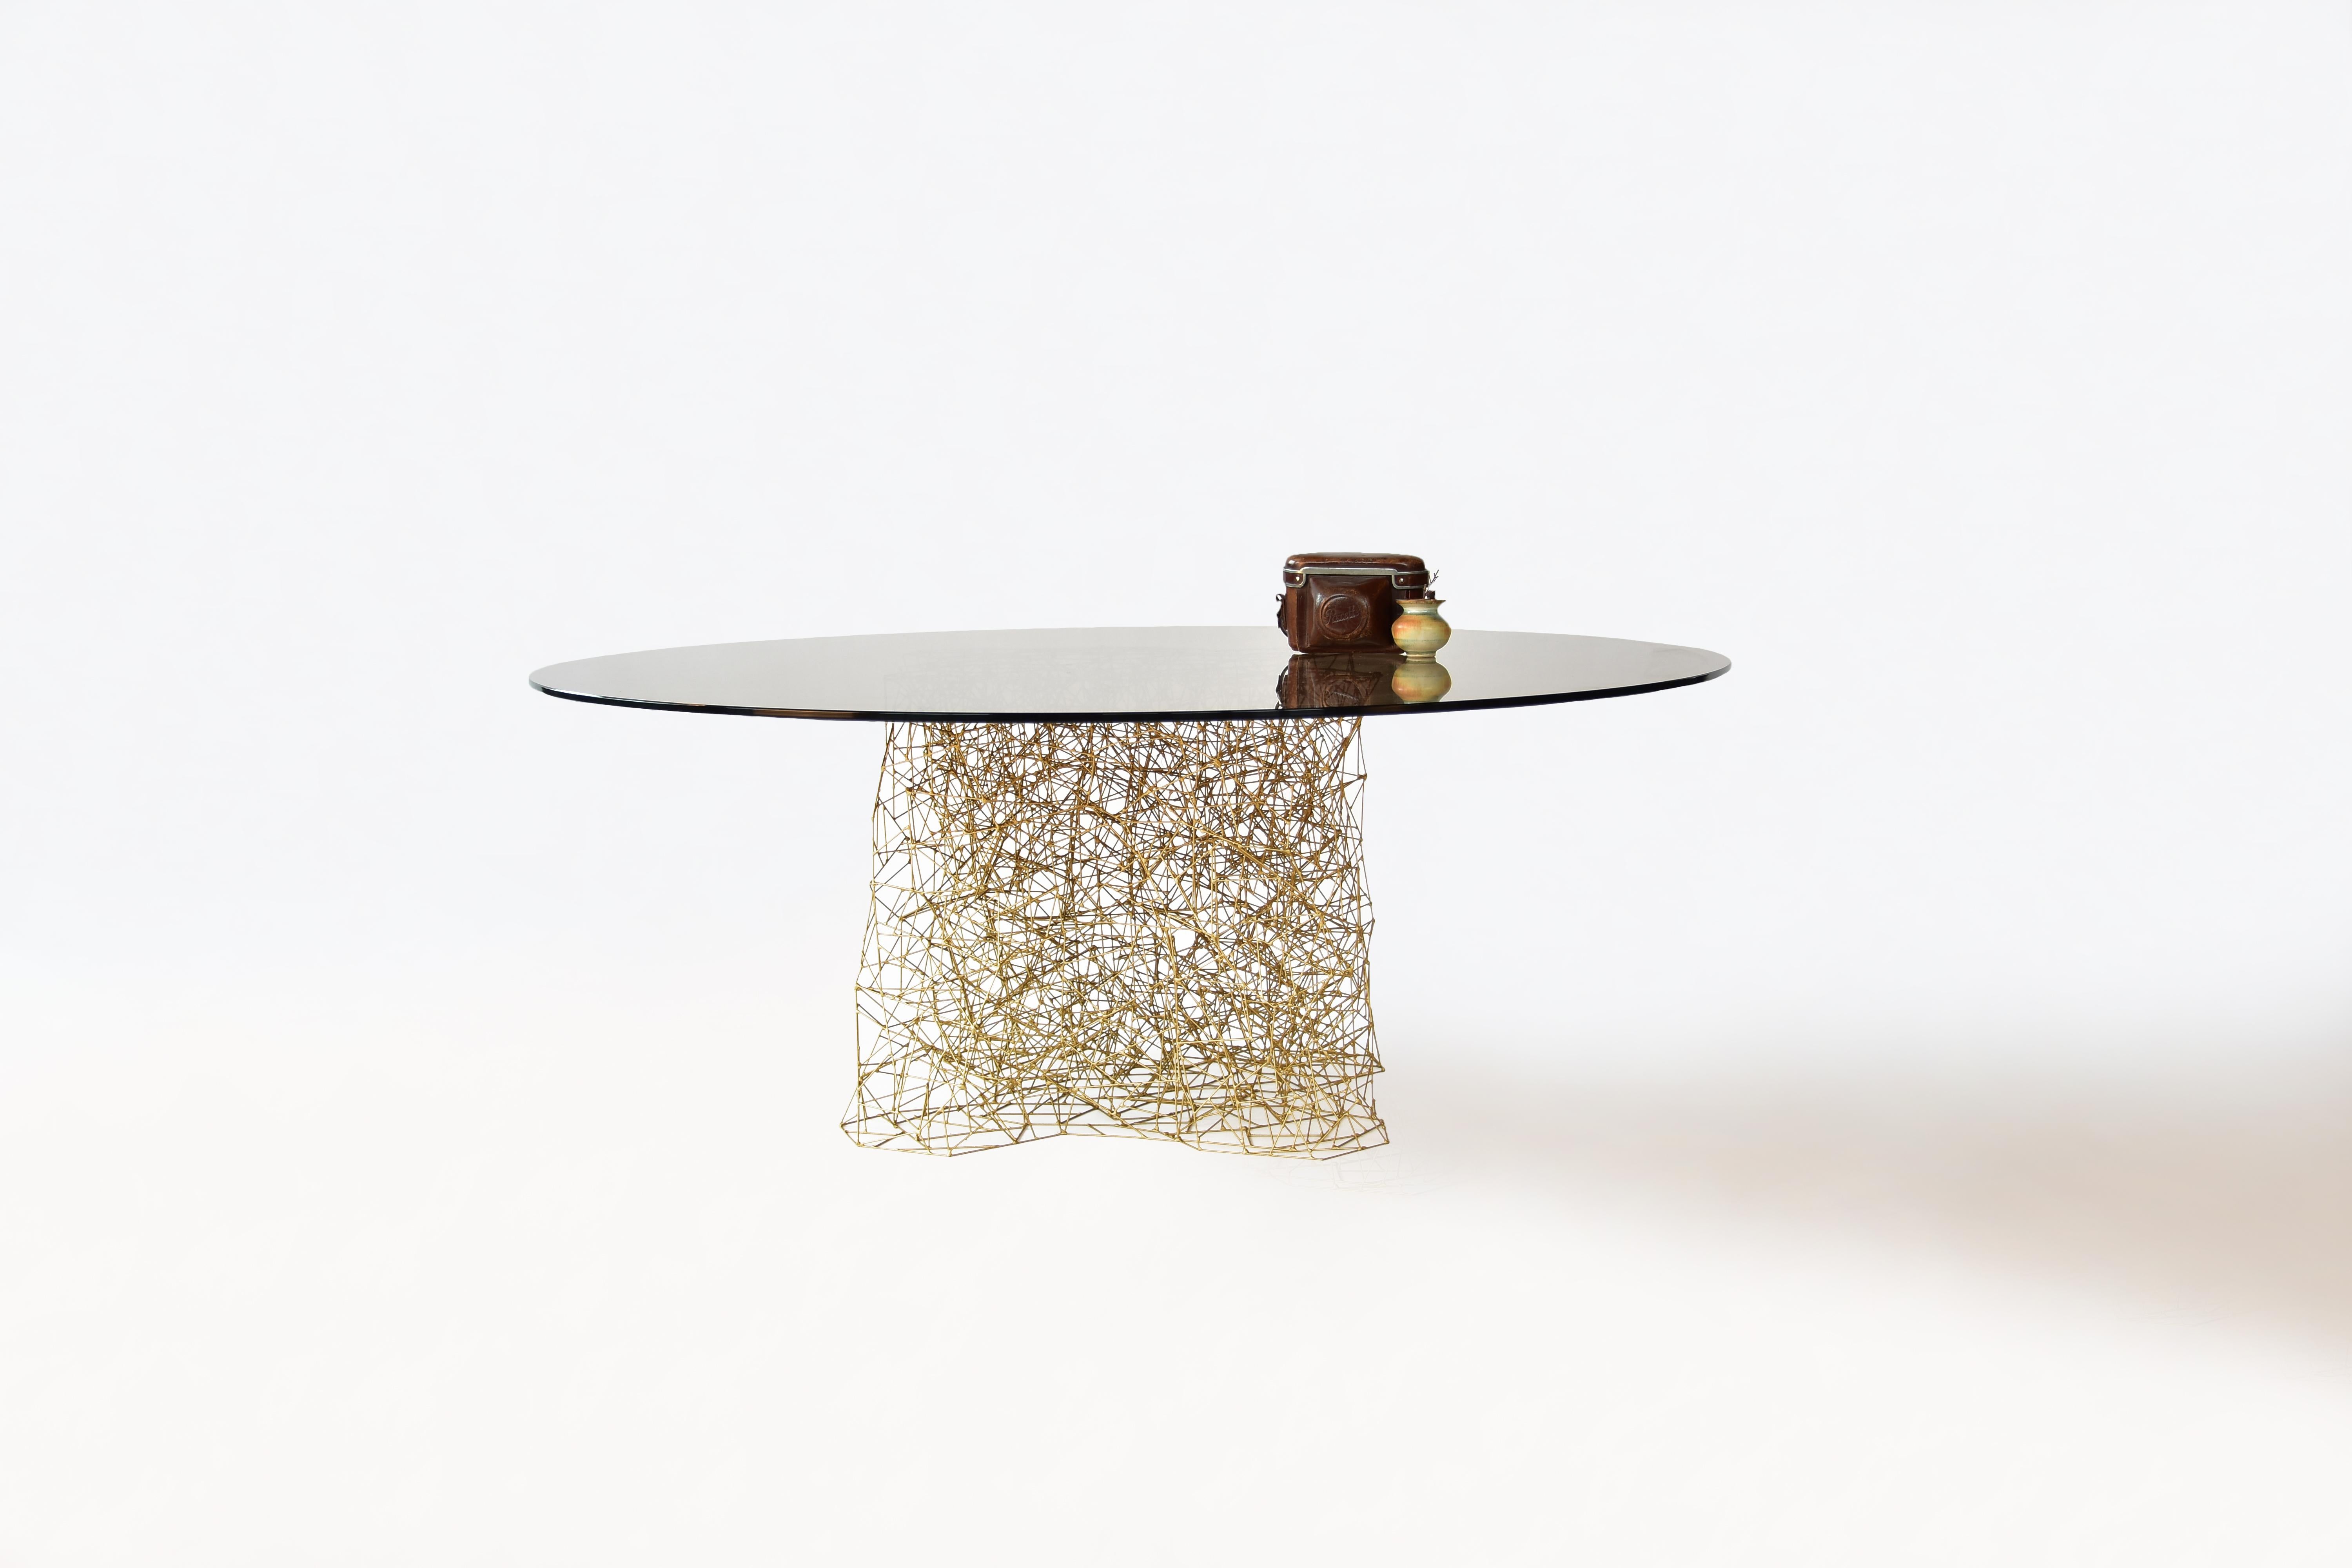 Table Together par Eichkorn
Dimensions : D 100 x H 38
MATERIAL : tiges de cuivre, plaque de verre teinté bronze.
Disponible en format table basse ou table de salle à manger.

Plus de 1000 barres de cuivre sont assemblées individuellement à la